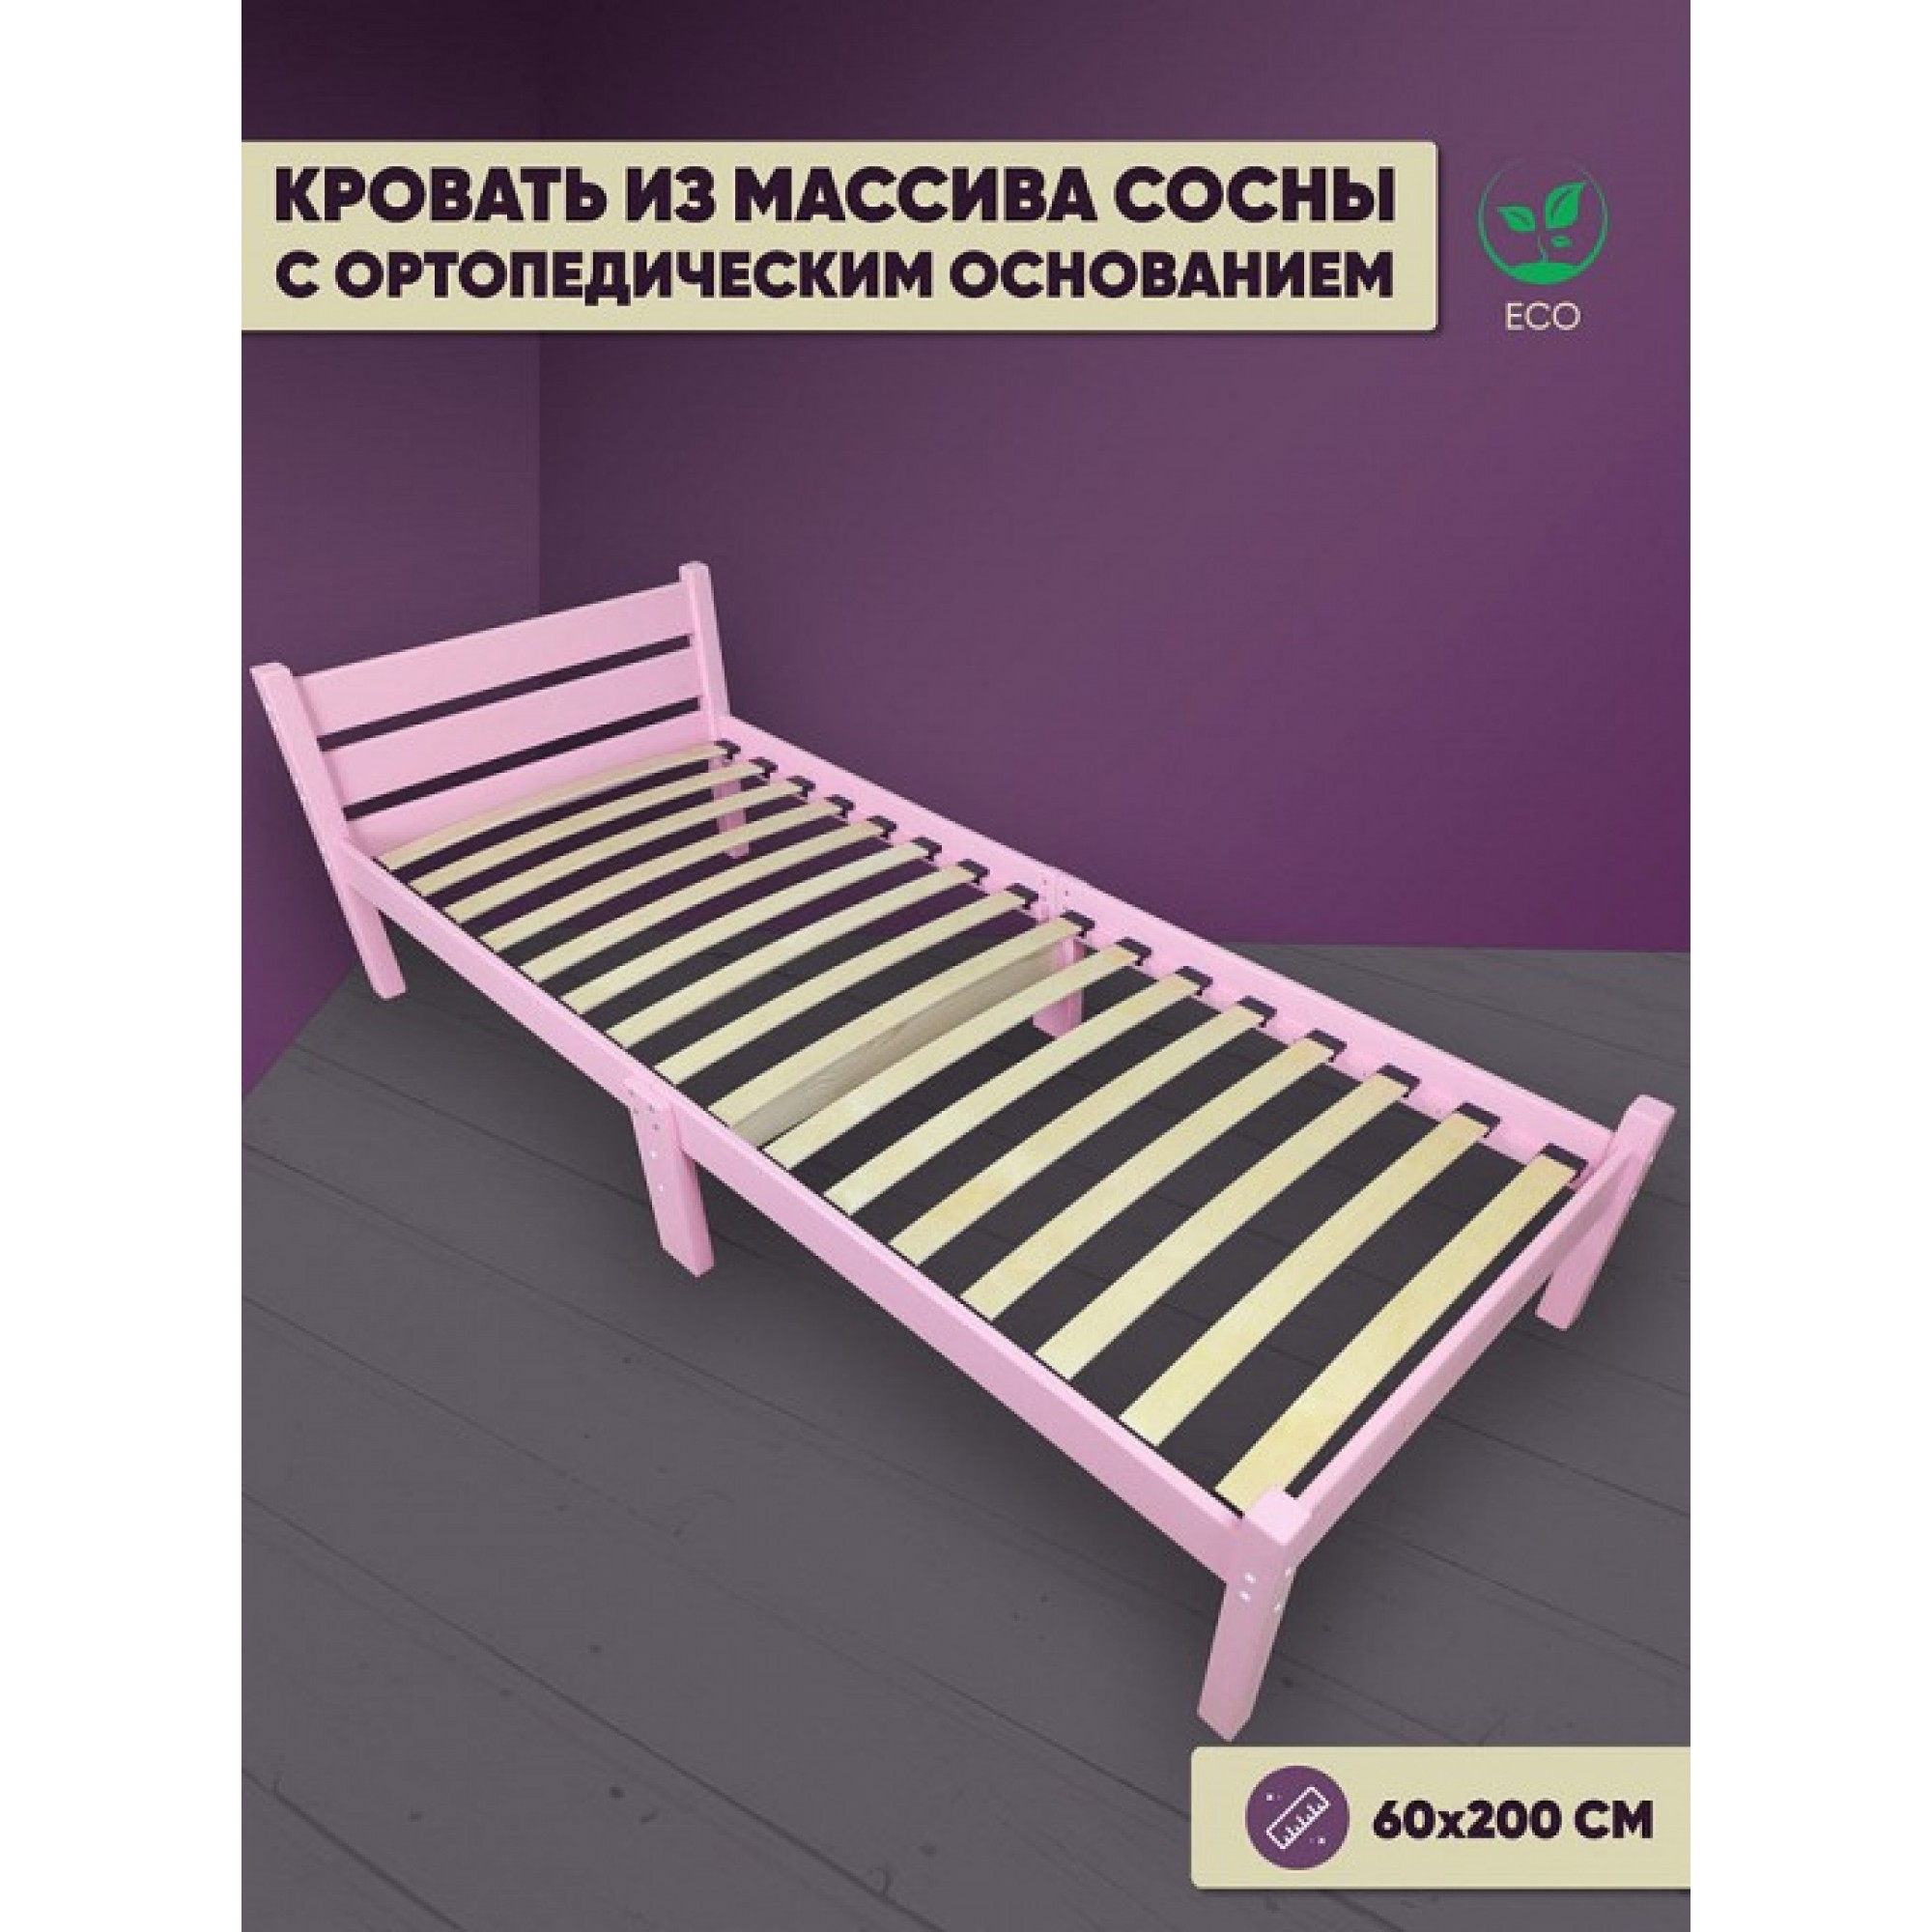 Кровать односпальная Компакт Орто 2000x600 розовый    SLR_ortokompakt60roz